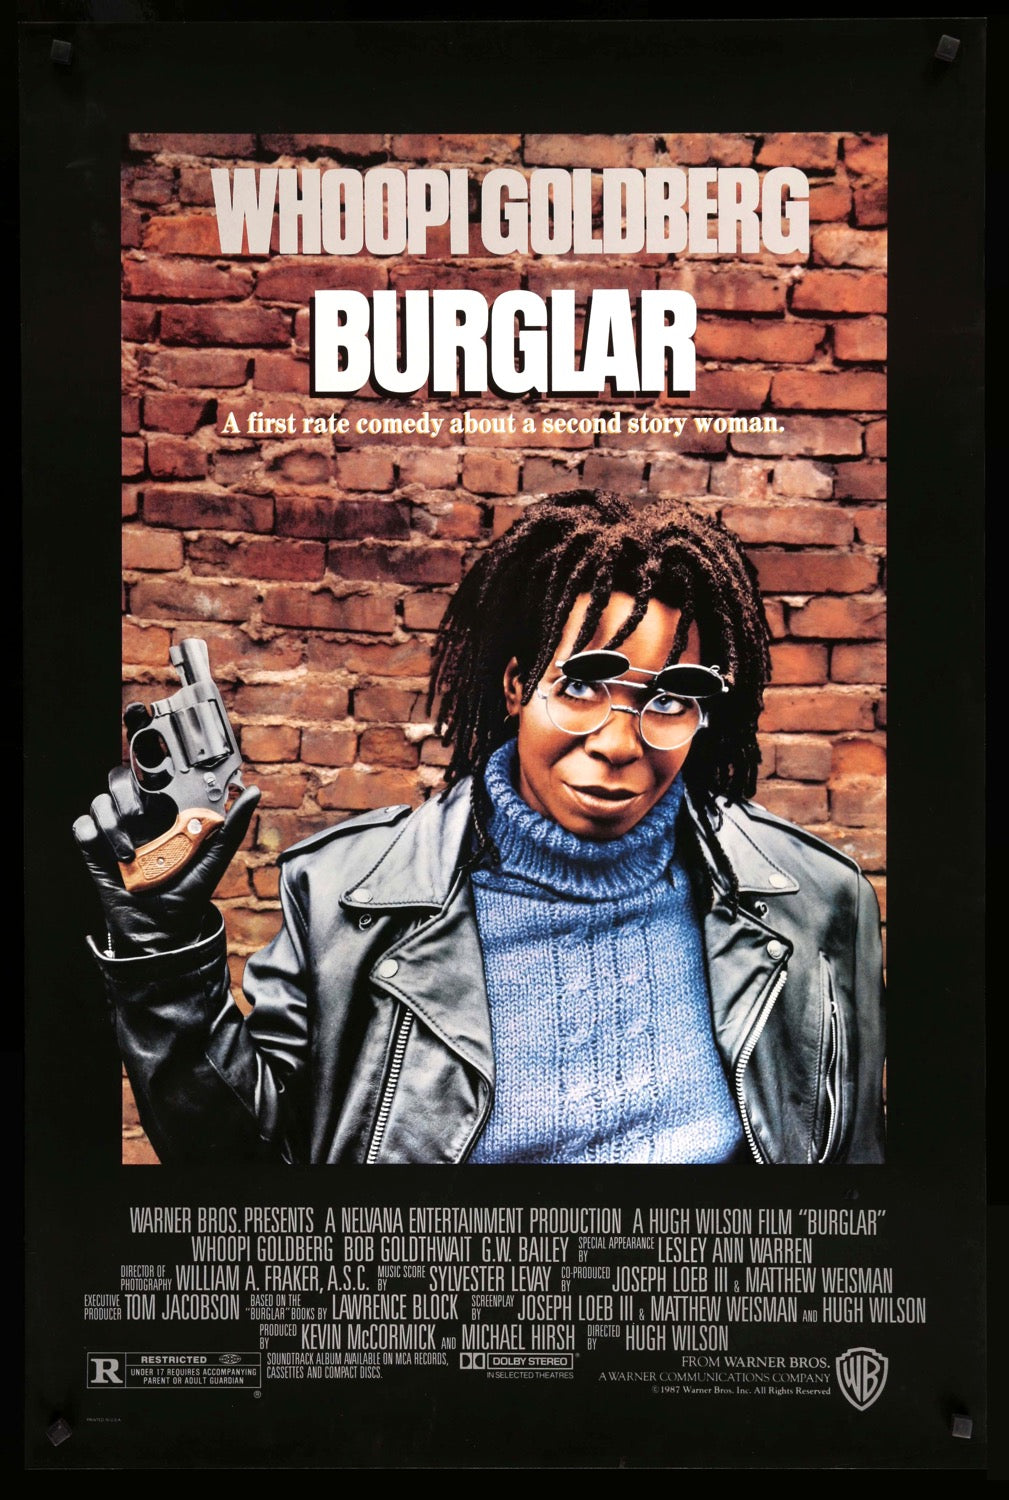 Burglar (1987) original movie poster for sale at Original Film Art